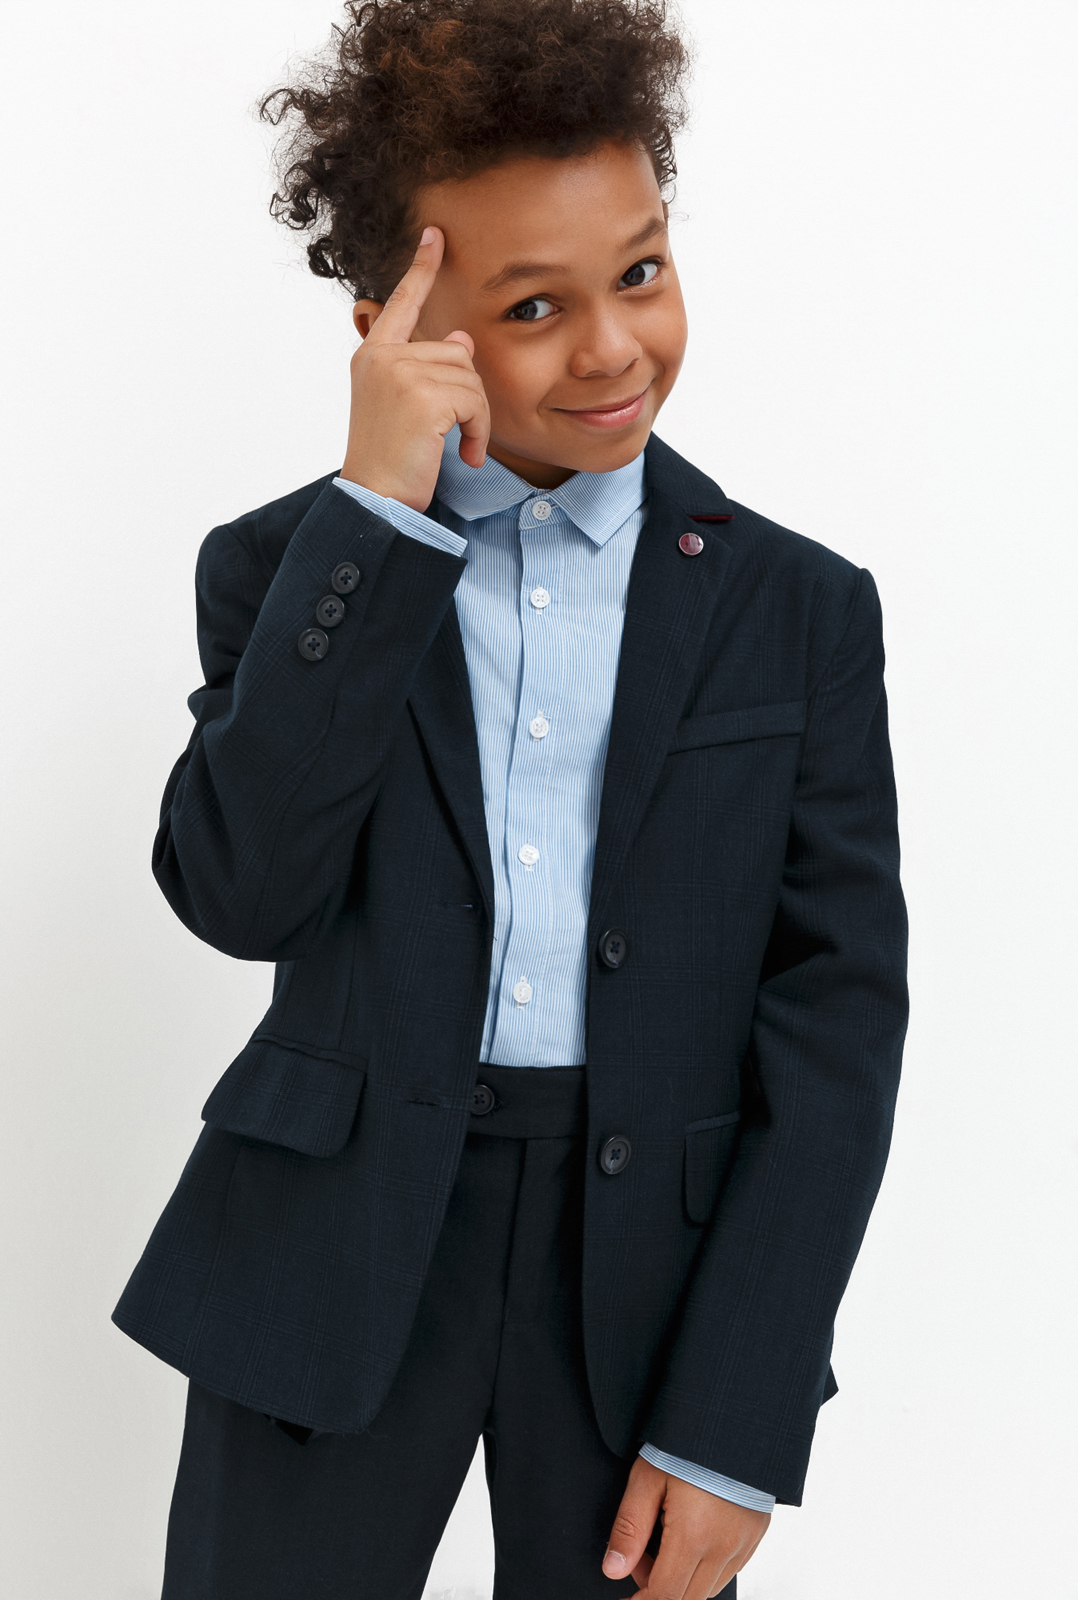 Пиджак для мальчика Acoola Chandler, цвет: темно-голубой. 20140130030_600. Размер 146